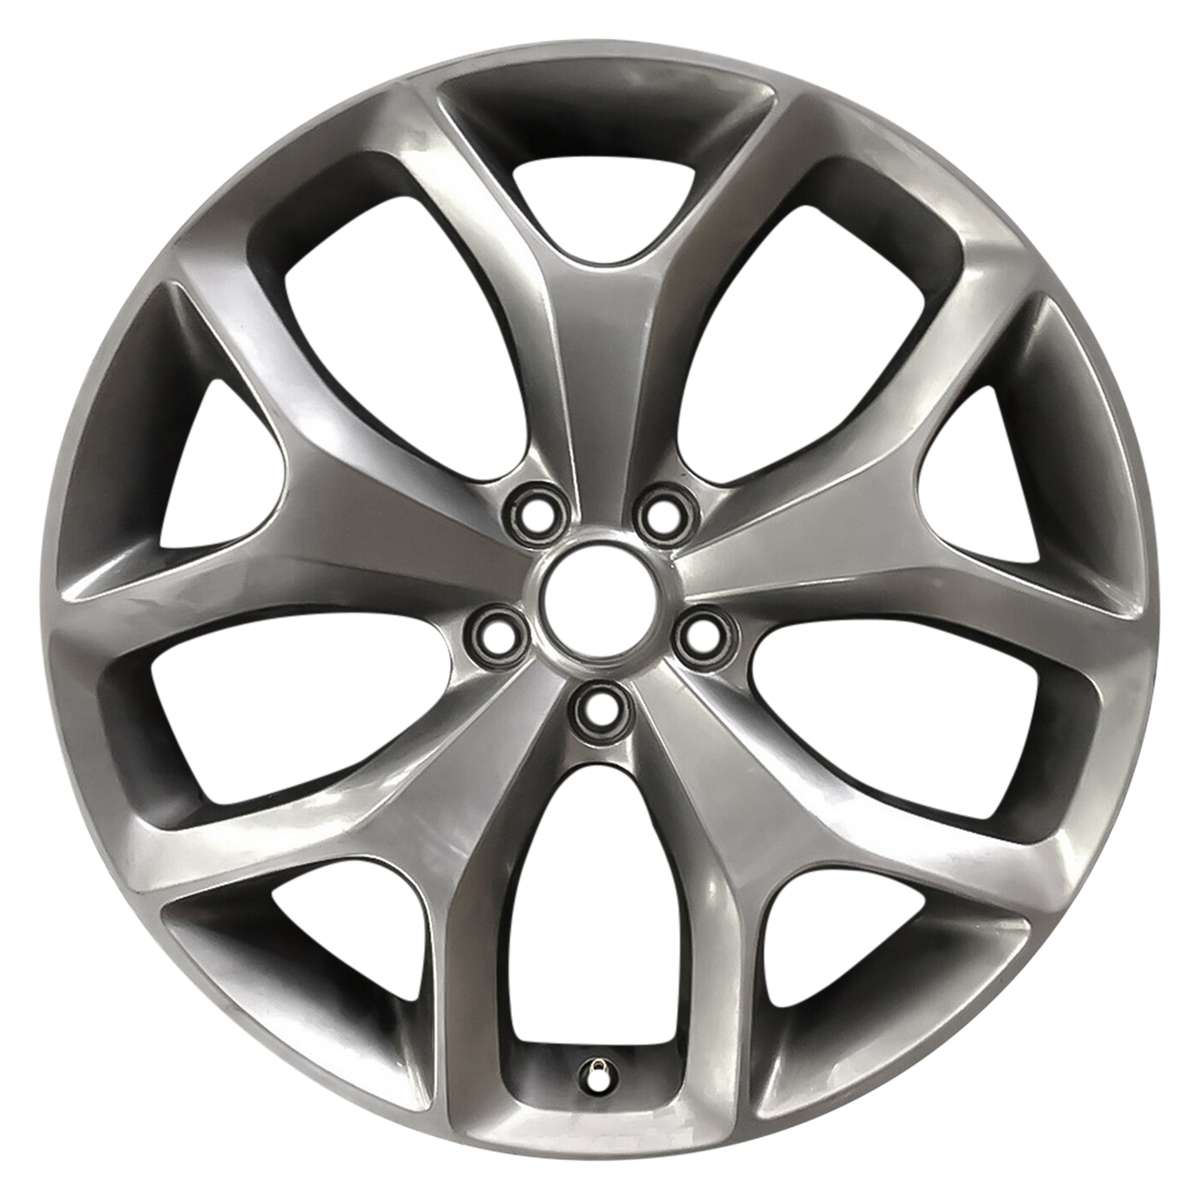 2015 Dodge Challenger 20" OEM Wheel Rim W2523LH